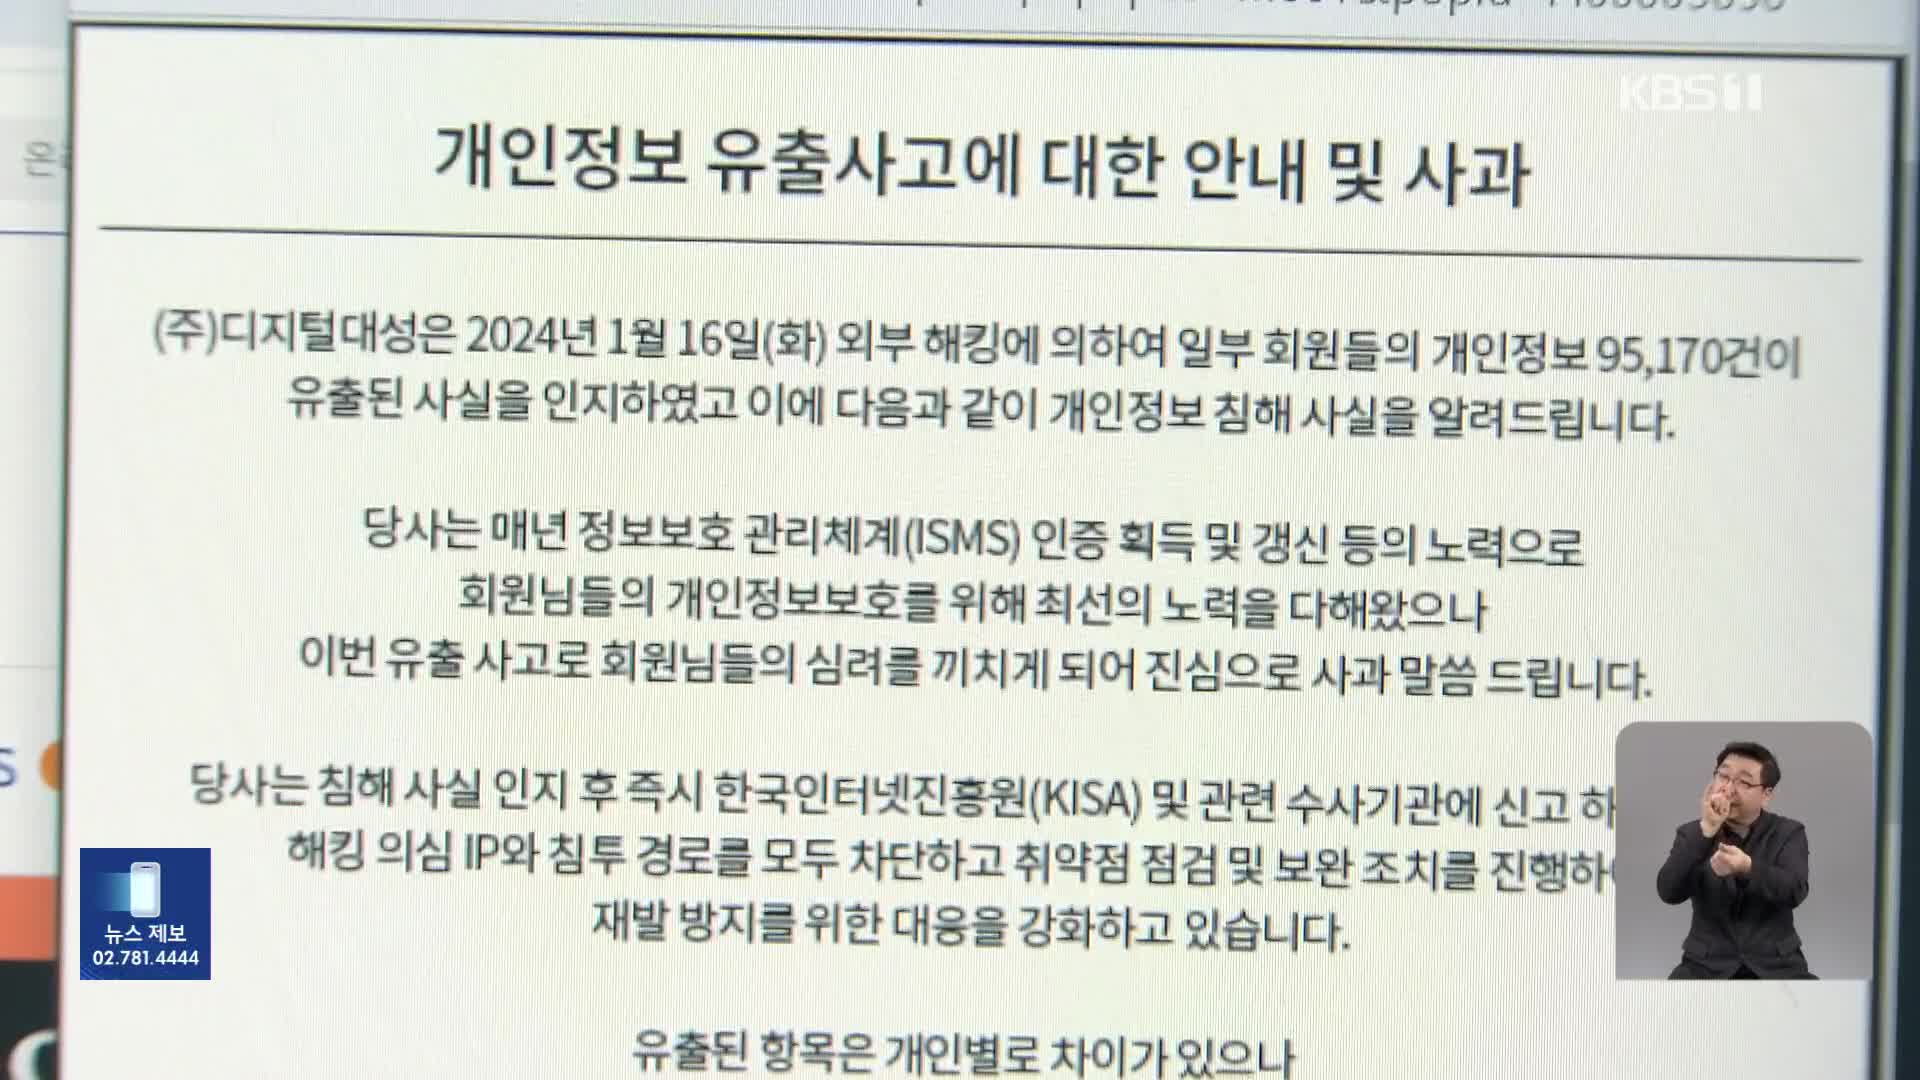 대성마이맥 해킹…회원 개인정보 9만 5천 건 유출